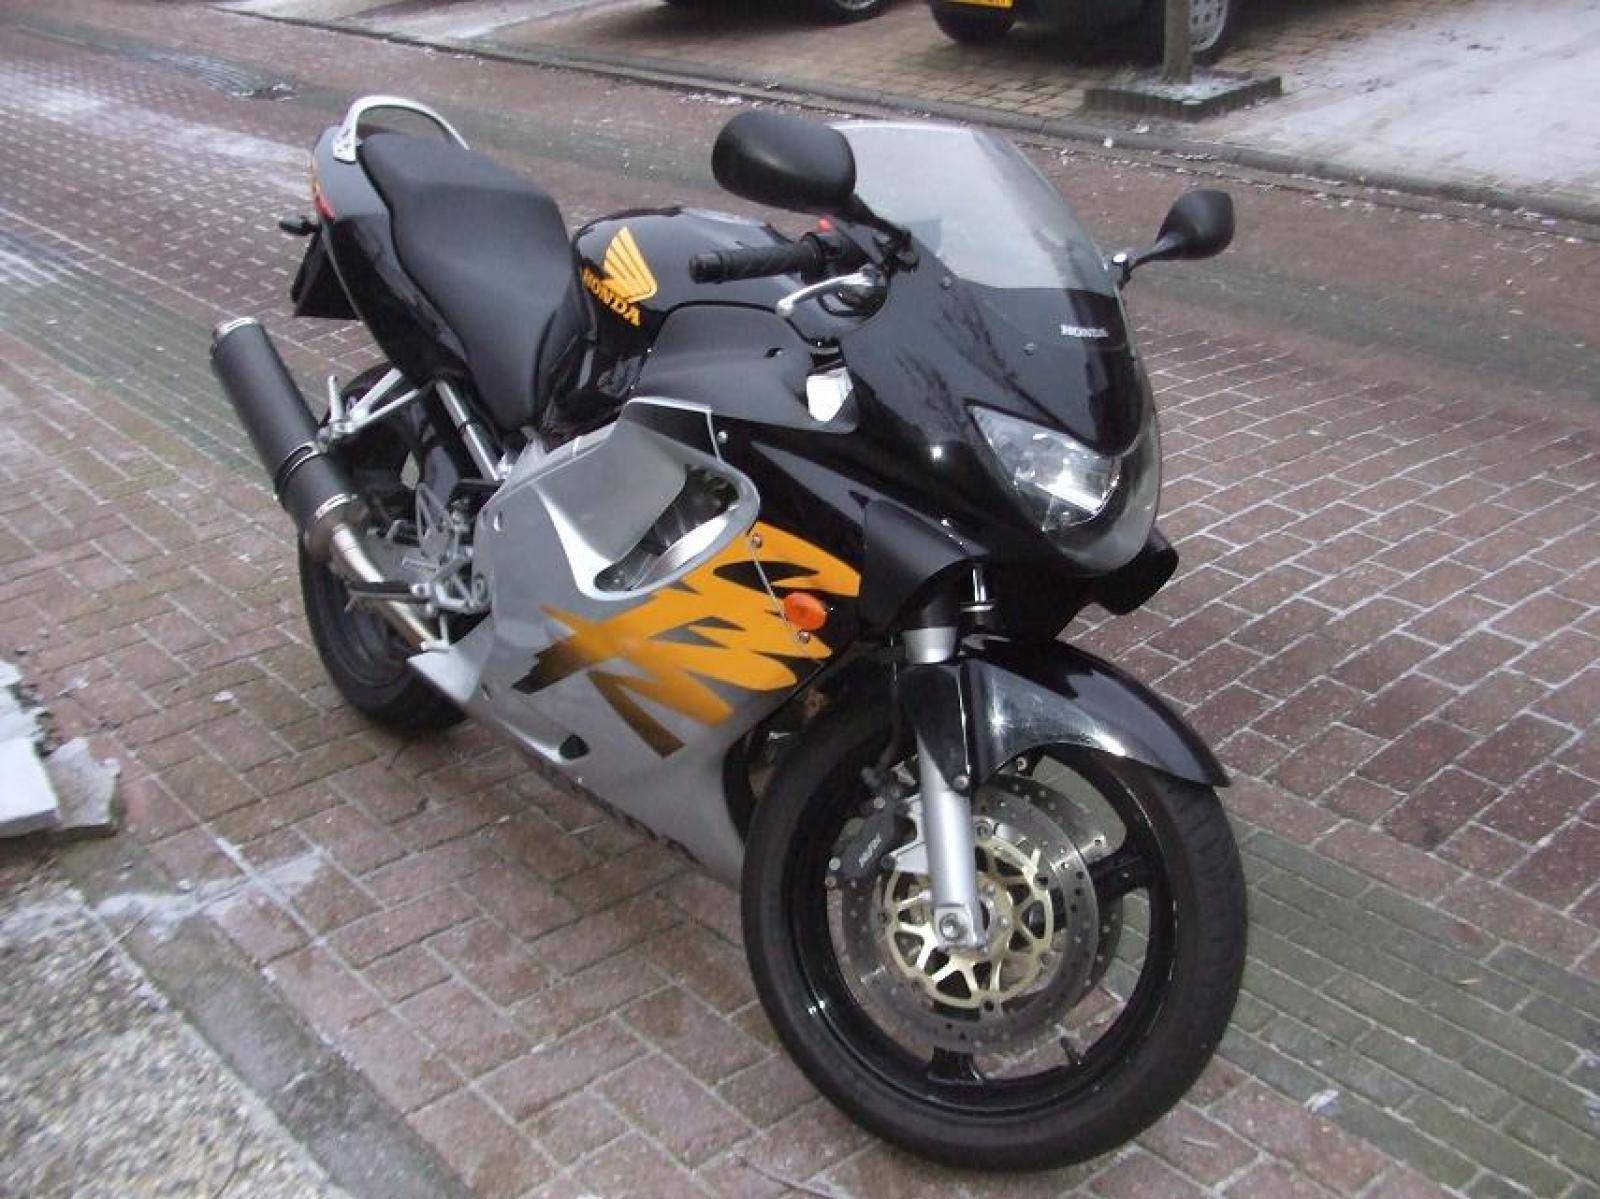 Honda cbr 600 f - обзор, технические характеристики | mymot - каталог мотоциклов и все объявления об их продаже в одном месте